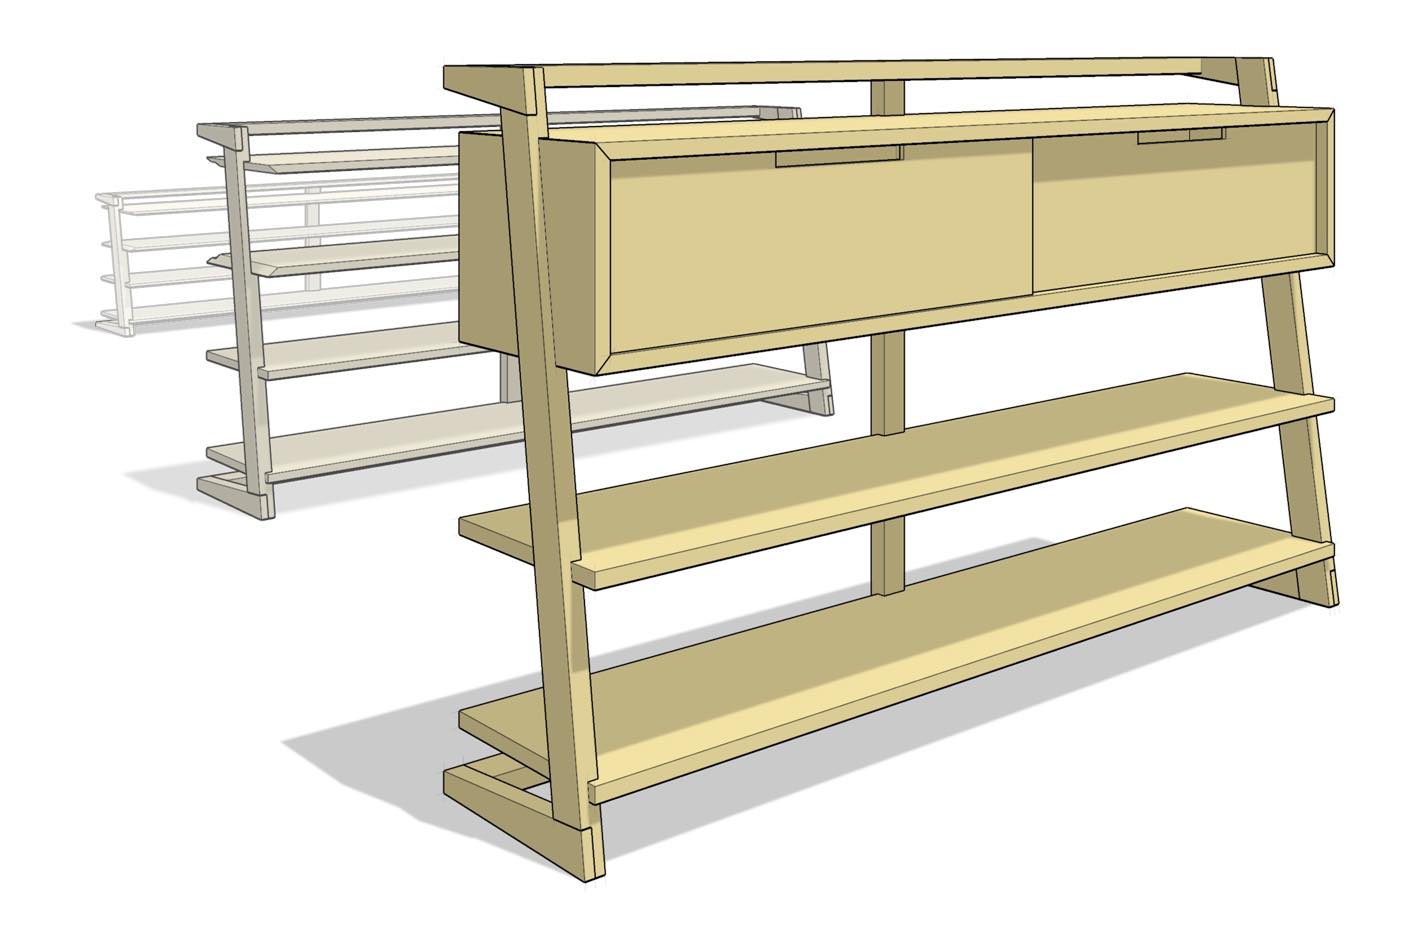 Praca w Drewnie i Projektowanie Wyrobów z Drewna - Rozwiązania SketchUp 2023